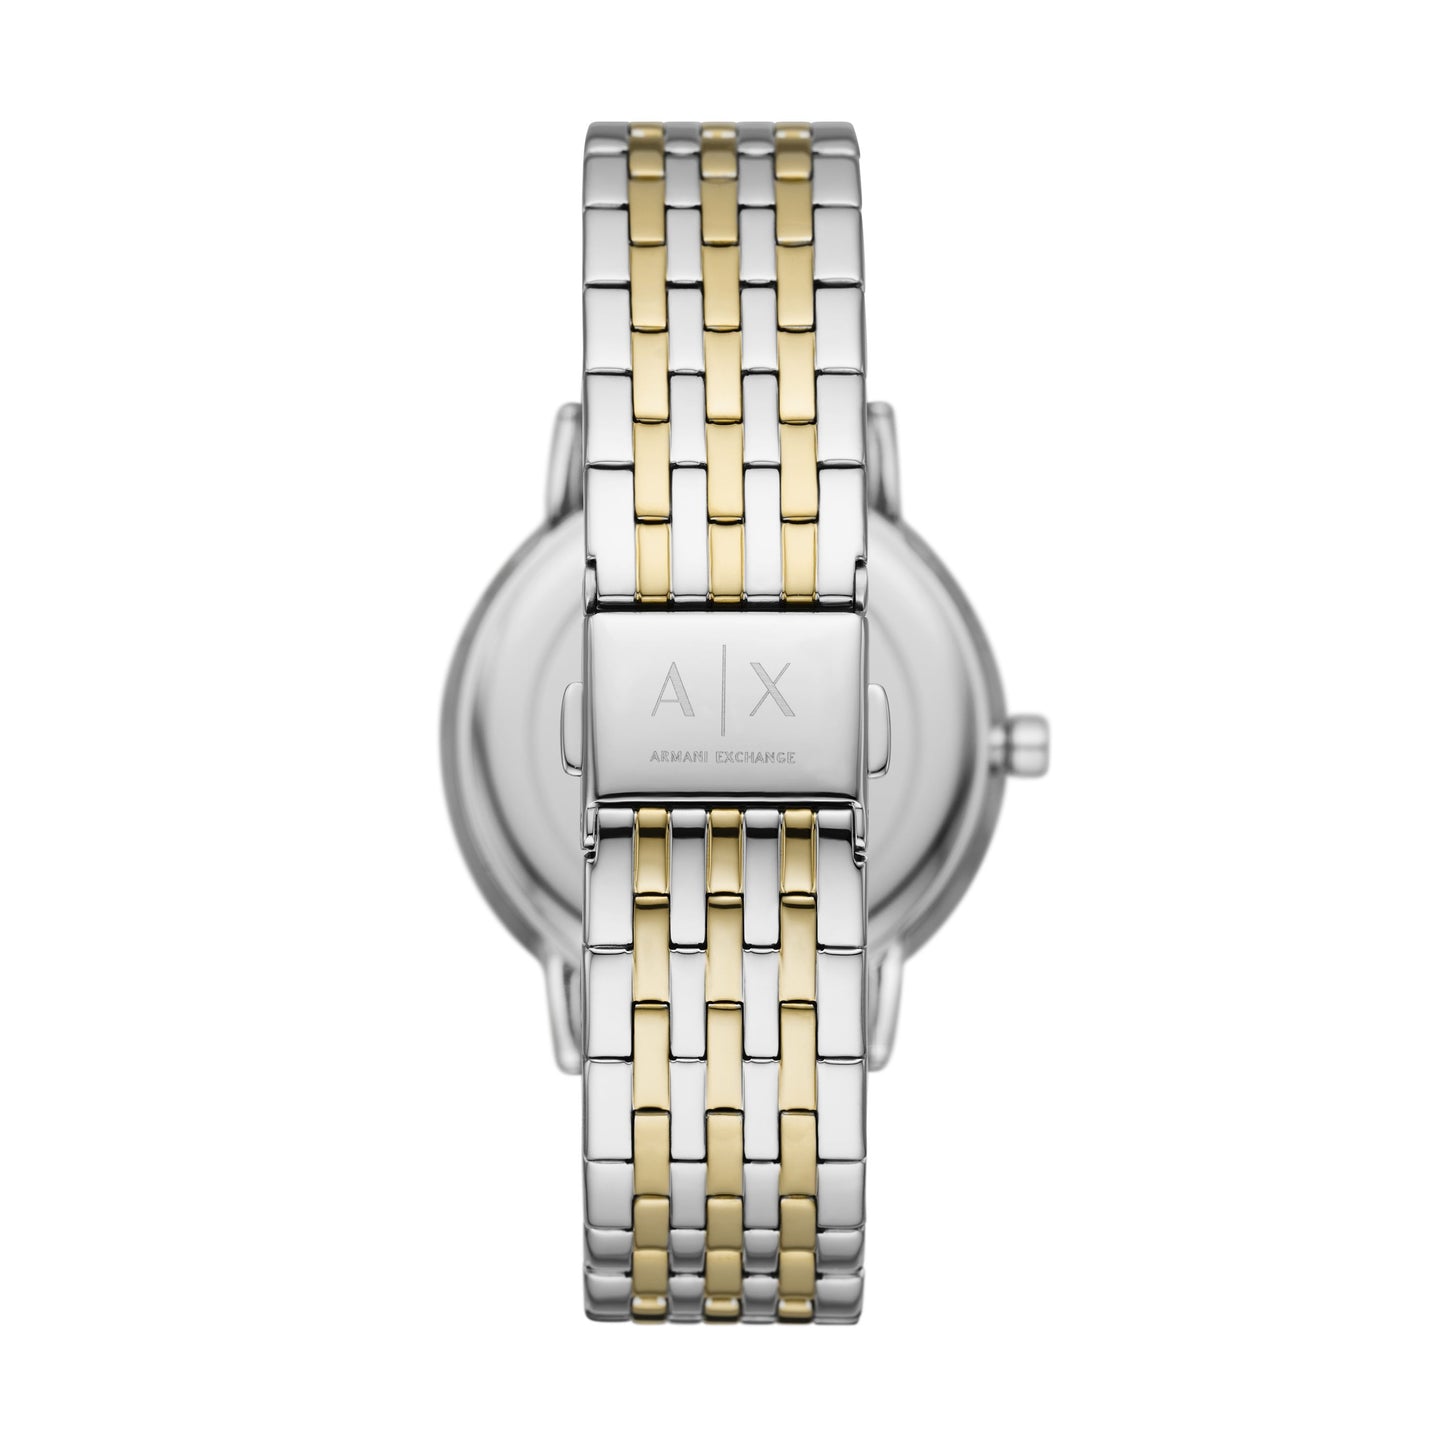 Armani Exchange Damen Uhr AX5595